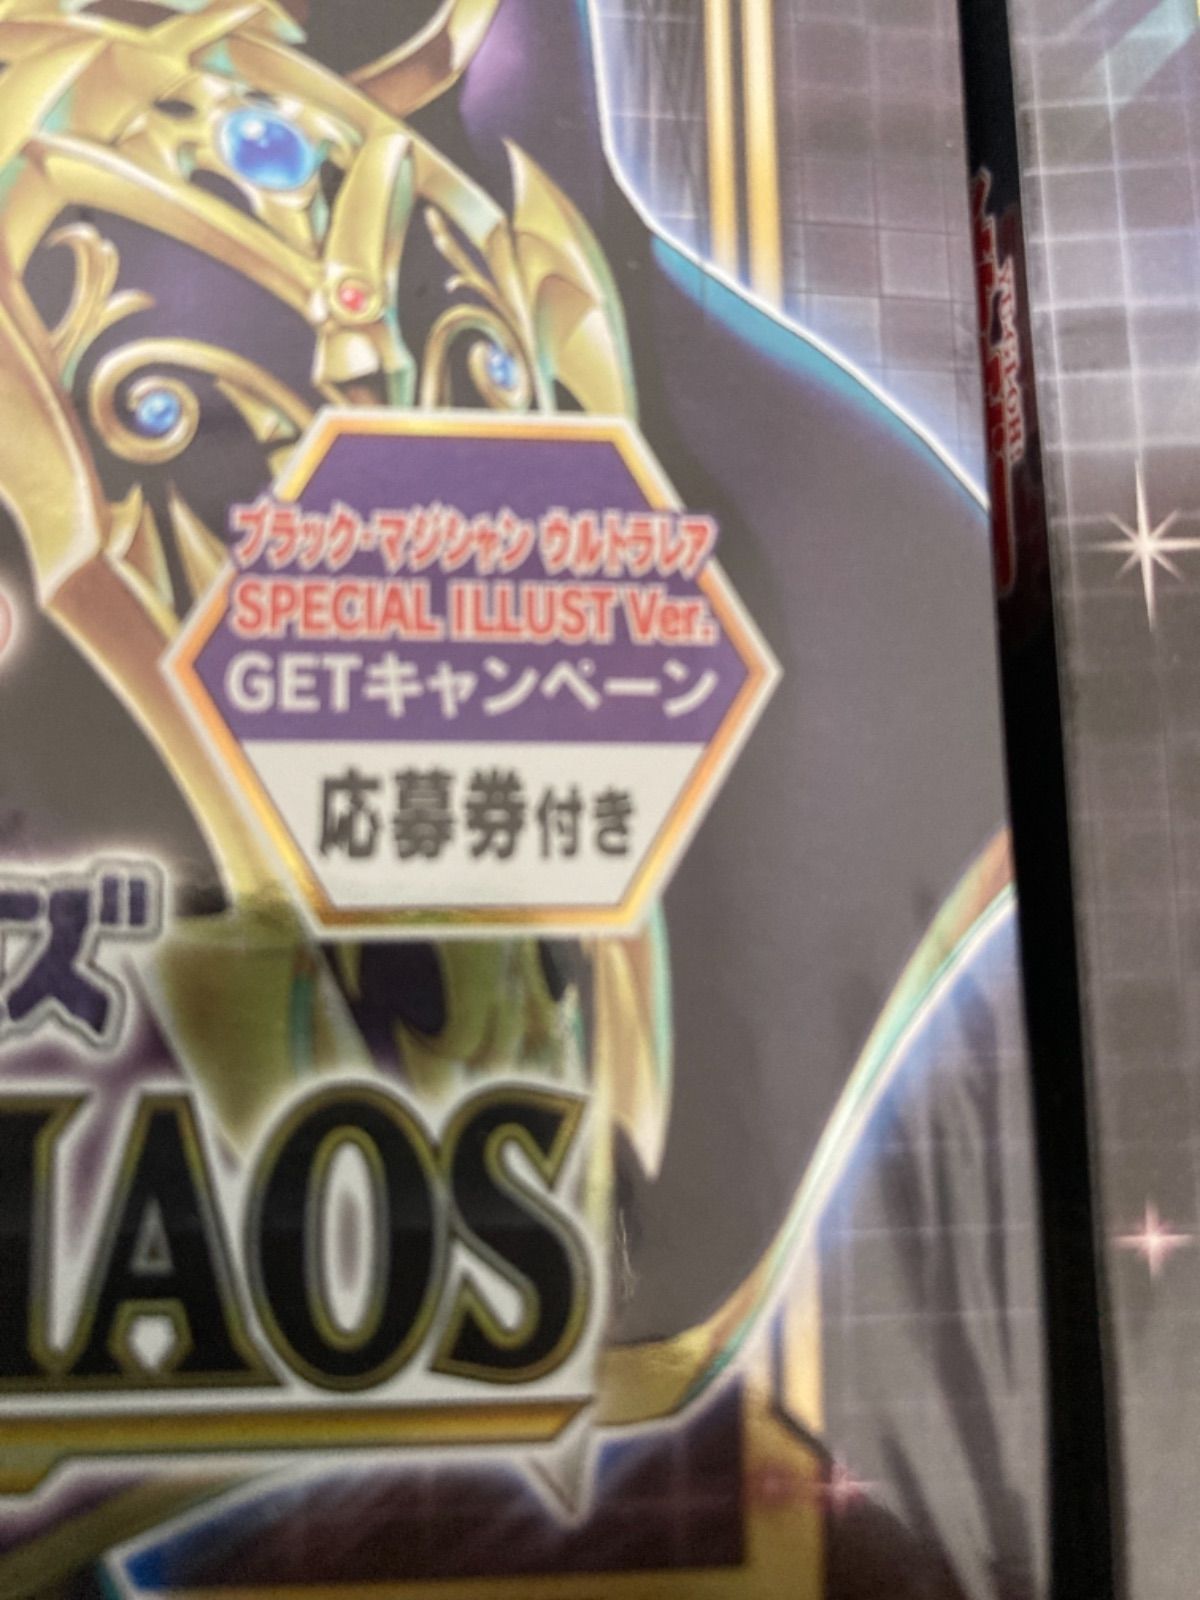 遊戯王 バトルオブカオス 初回生産限定 応募券付き 4BOXセット